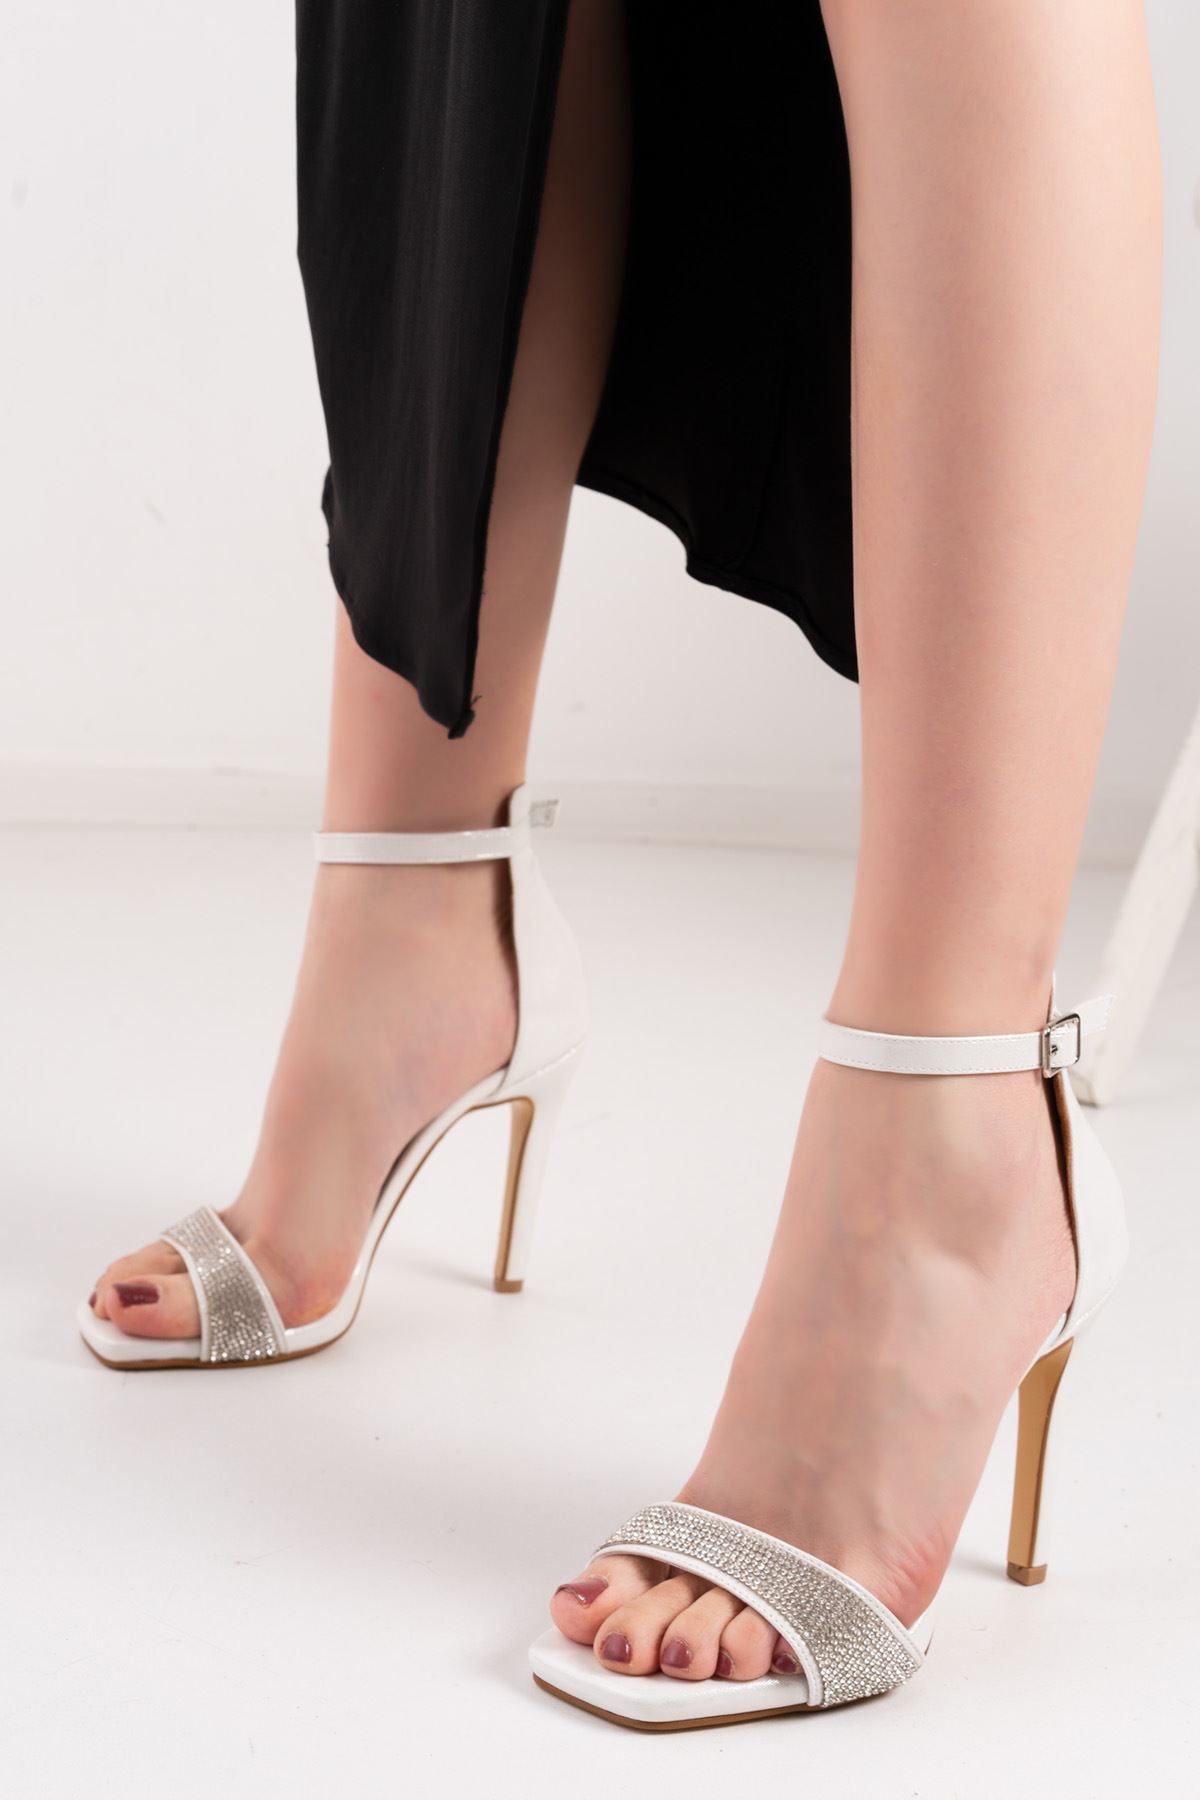 Maise Beyaz Simli Taş Detaylı  Kadın Yüksek Topuklu Kadın Ayakkabı 